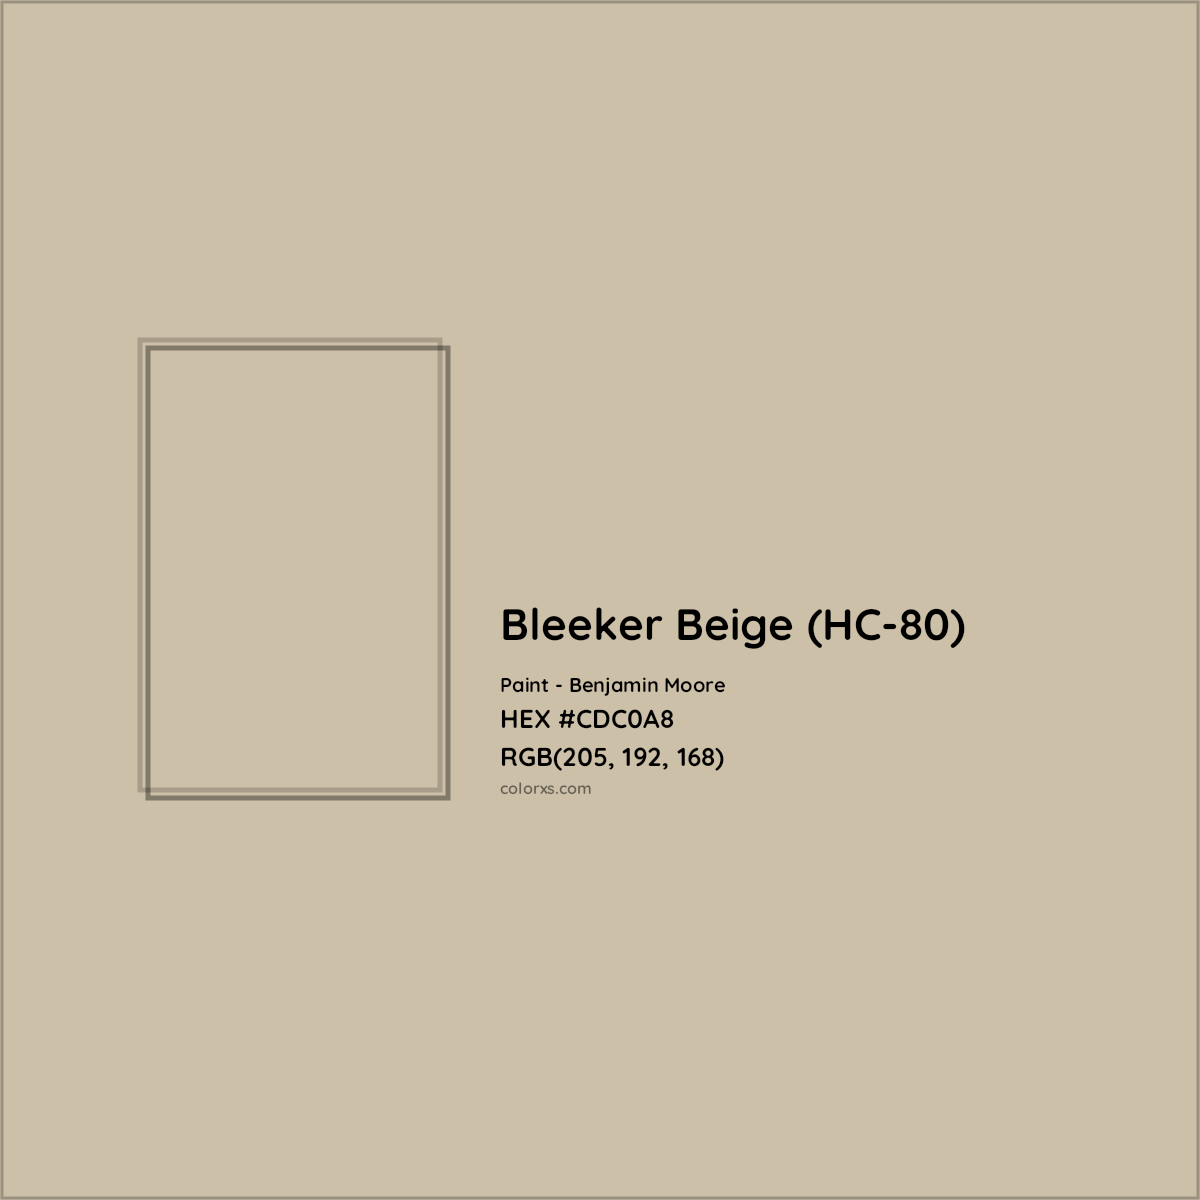 HEX #CDC0A8 Bleeker Beige (HC-80) Paint Benjamin Moore - Color Code